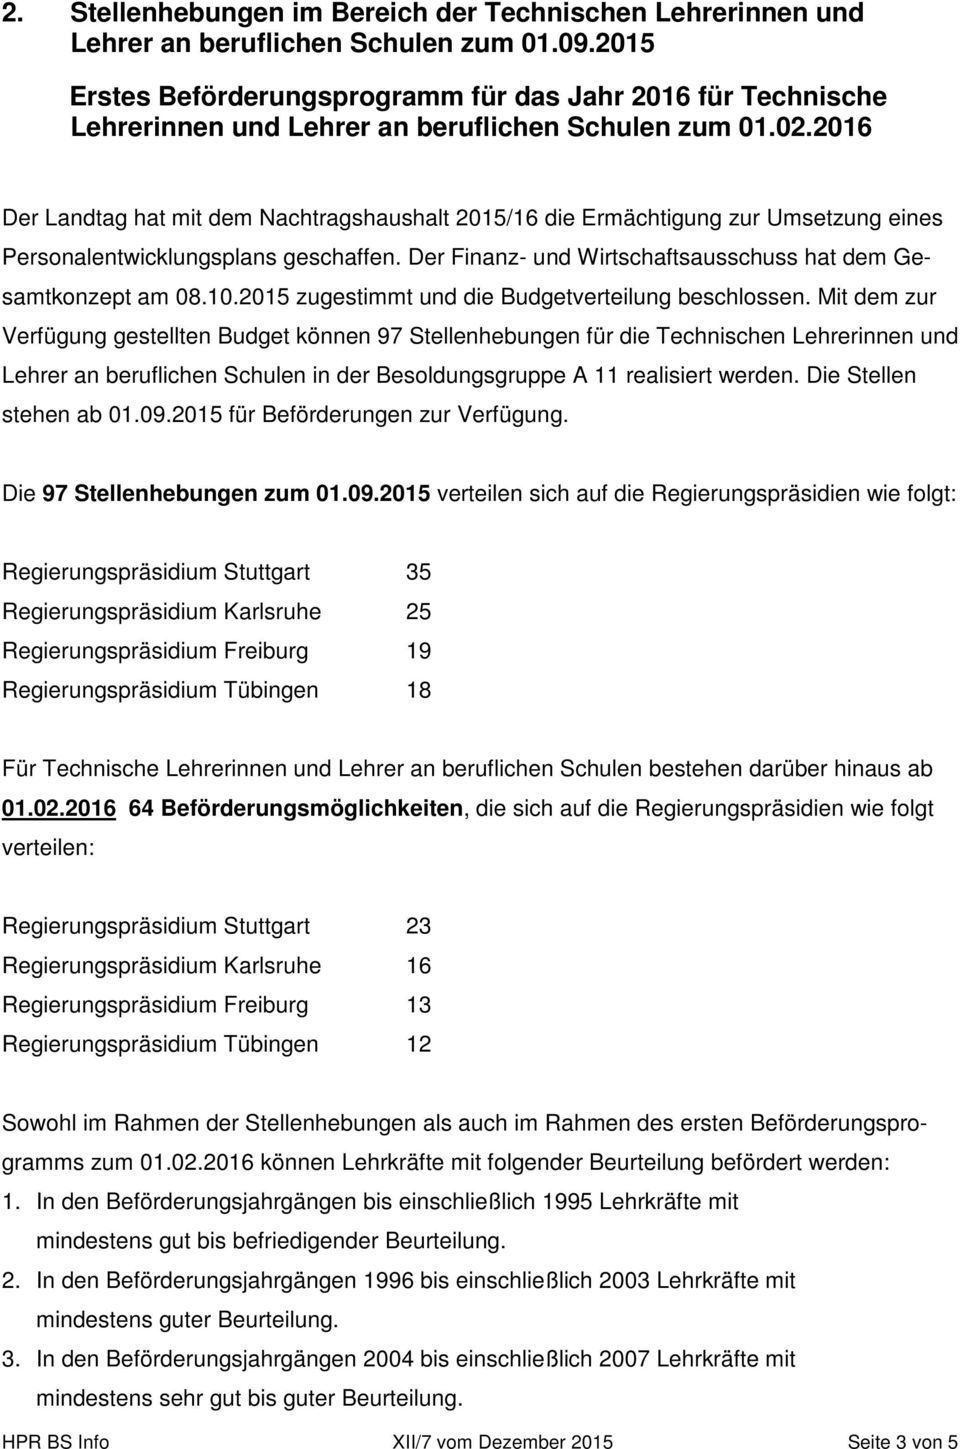 2016 Der Landtag hat mit dem Nachtragshaushalt 2015/16 die Ermächtigung zur Umsetzung eines Personalentwicklungsplans geschaffen. Der Finanz- und Wirtschaftsausschuss hat dem Gesamtkonzept am 08.10.